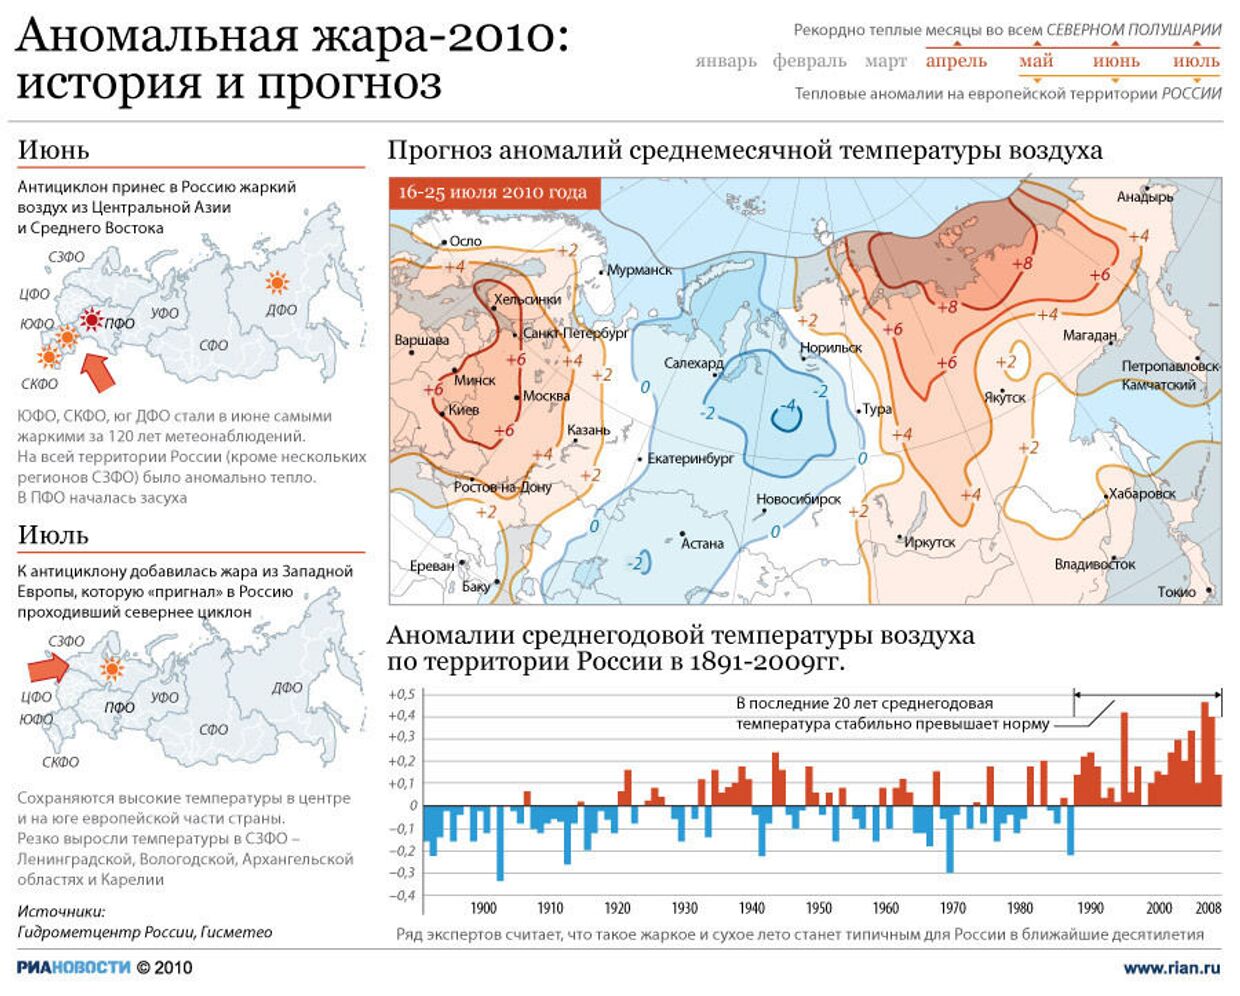 Лето 2010 года в россии. Лето 2010 года аномальная жара. Аномальная жара 2010 года в России. Аномальной жары в России 2010 года. Аномально жаркое лето 2010 года в России.